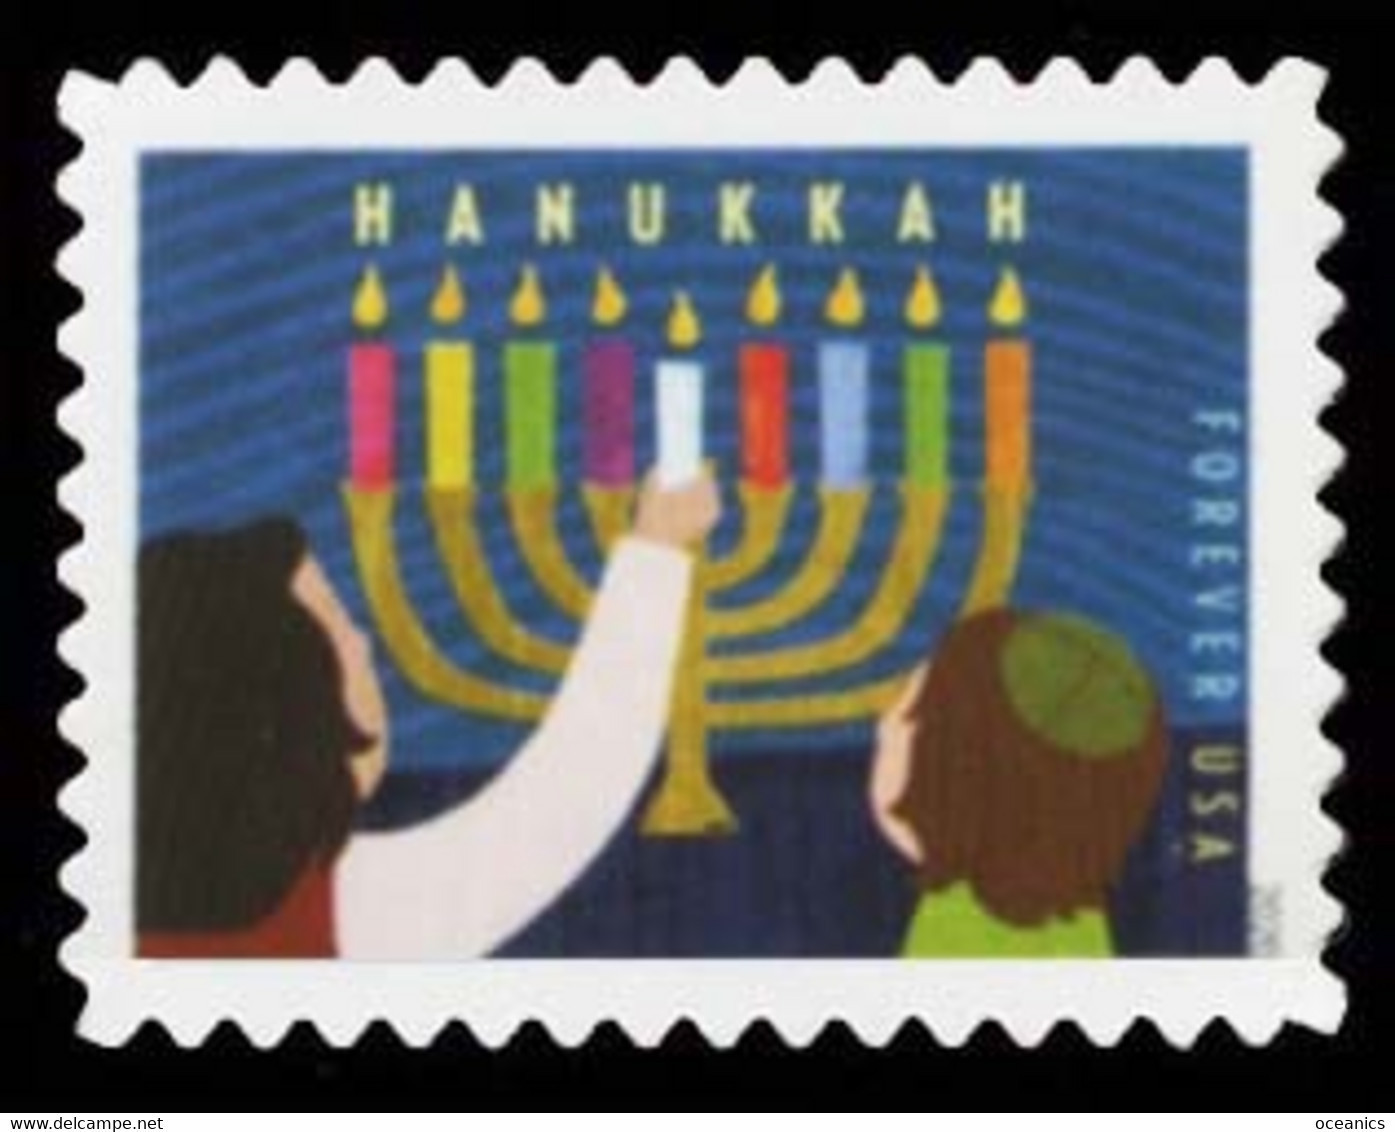 Etats-Unis / United States (Scott No.5530 - Hanukkah) [**] - Unused Stamps